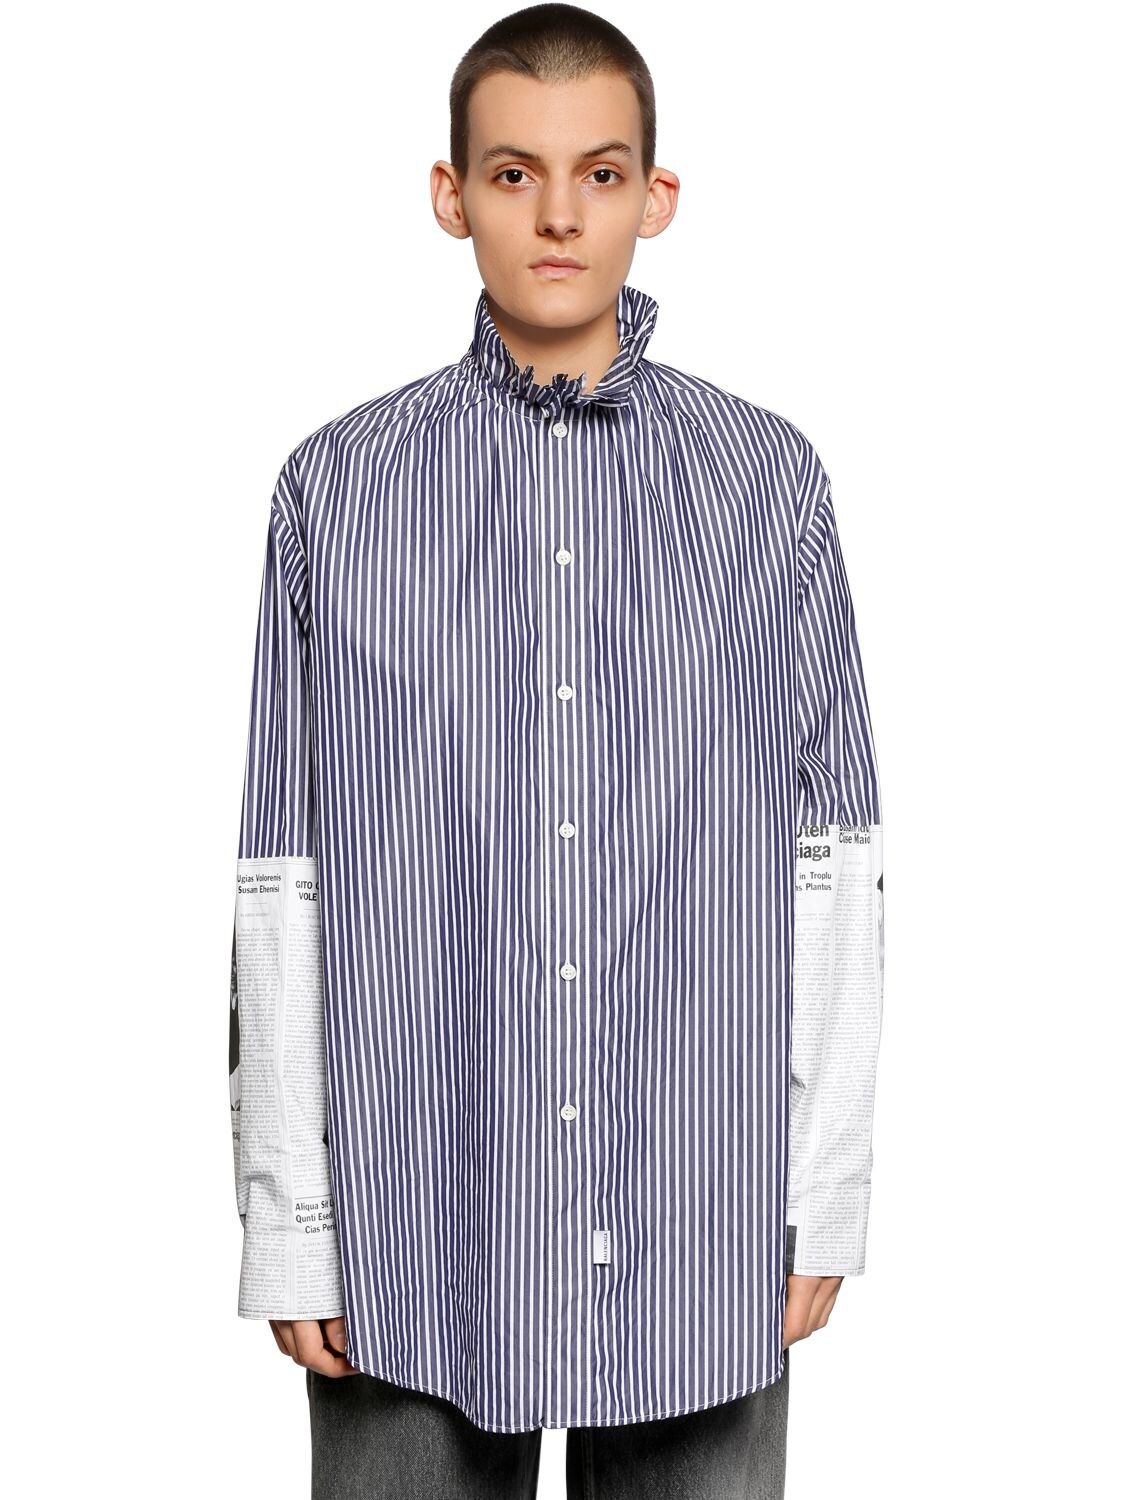 BALENCIAGA 廓形条纹府绸衬衫,68IIUU005-ODUwMg2